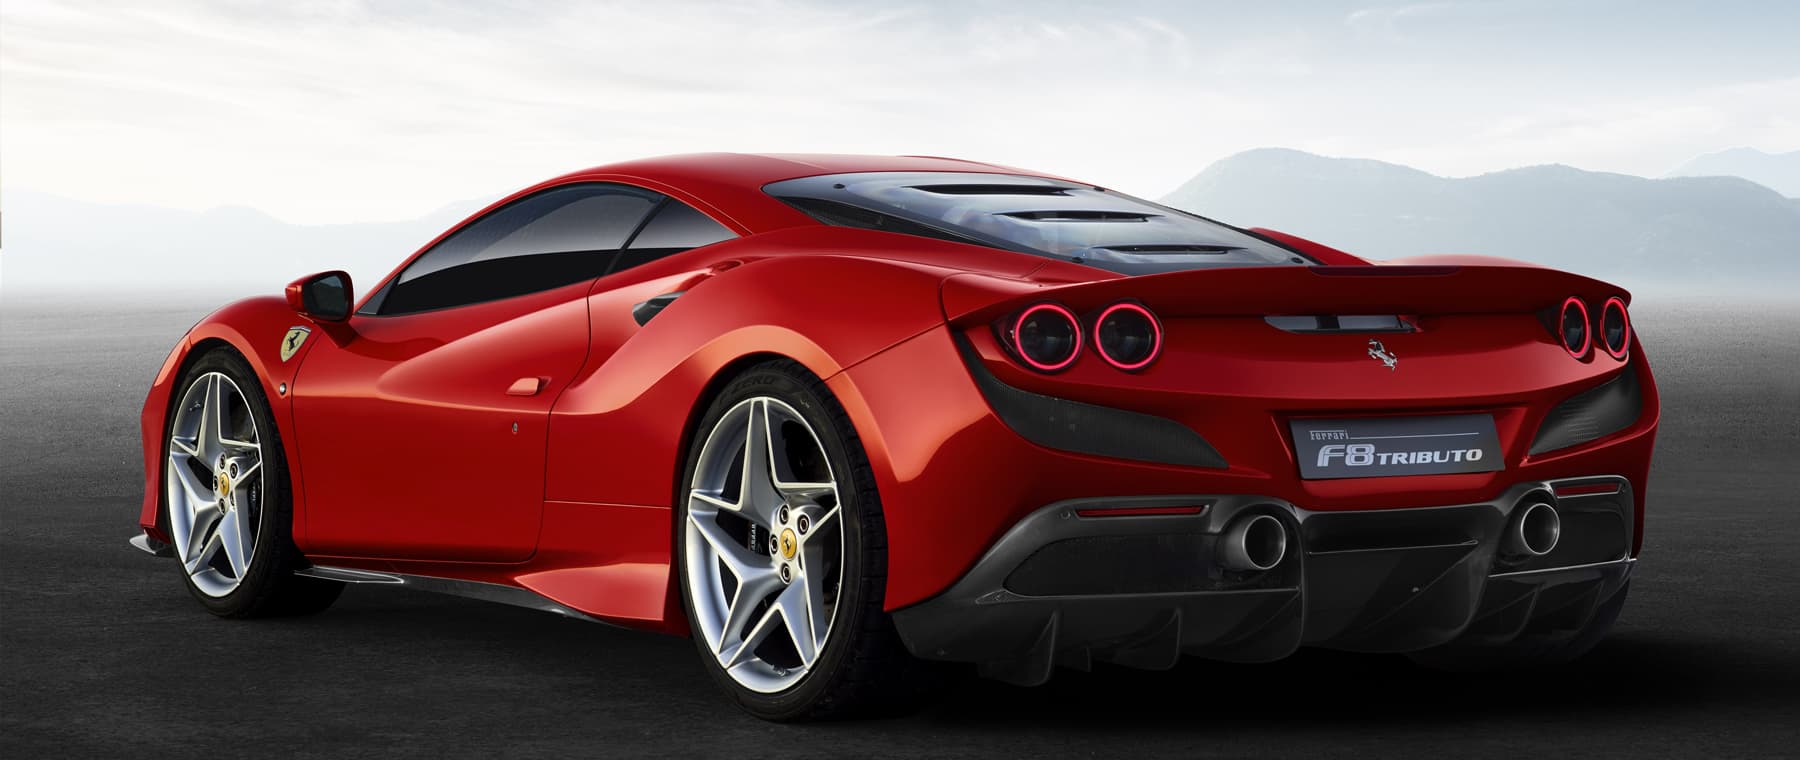 Ferrari Of Salt Lake City Luxury Vehicle Dealer Service Center Ut